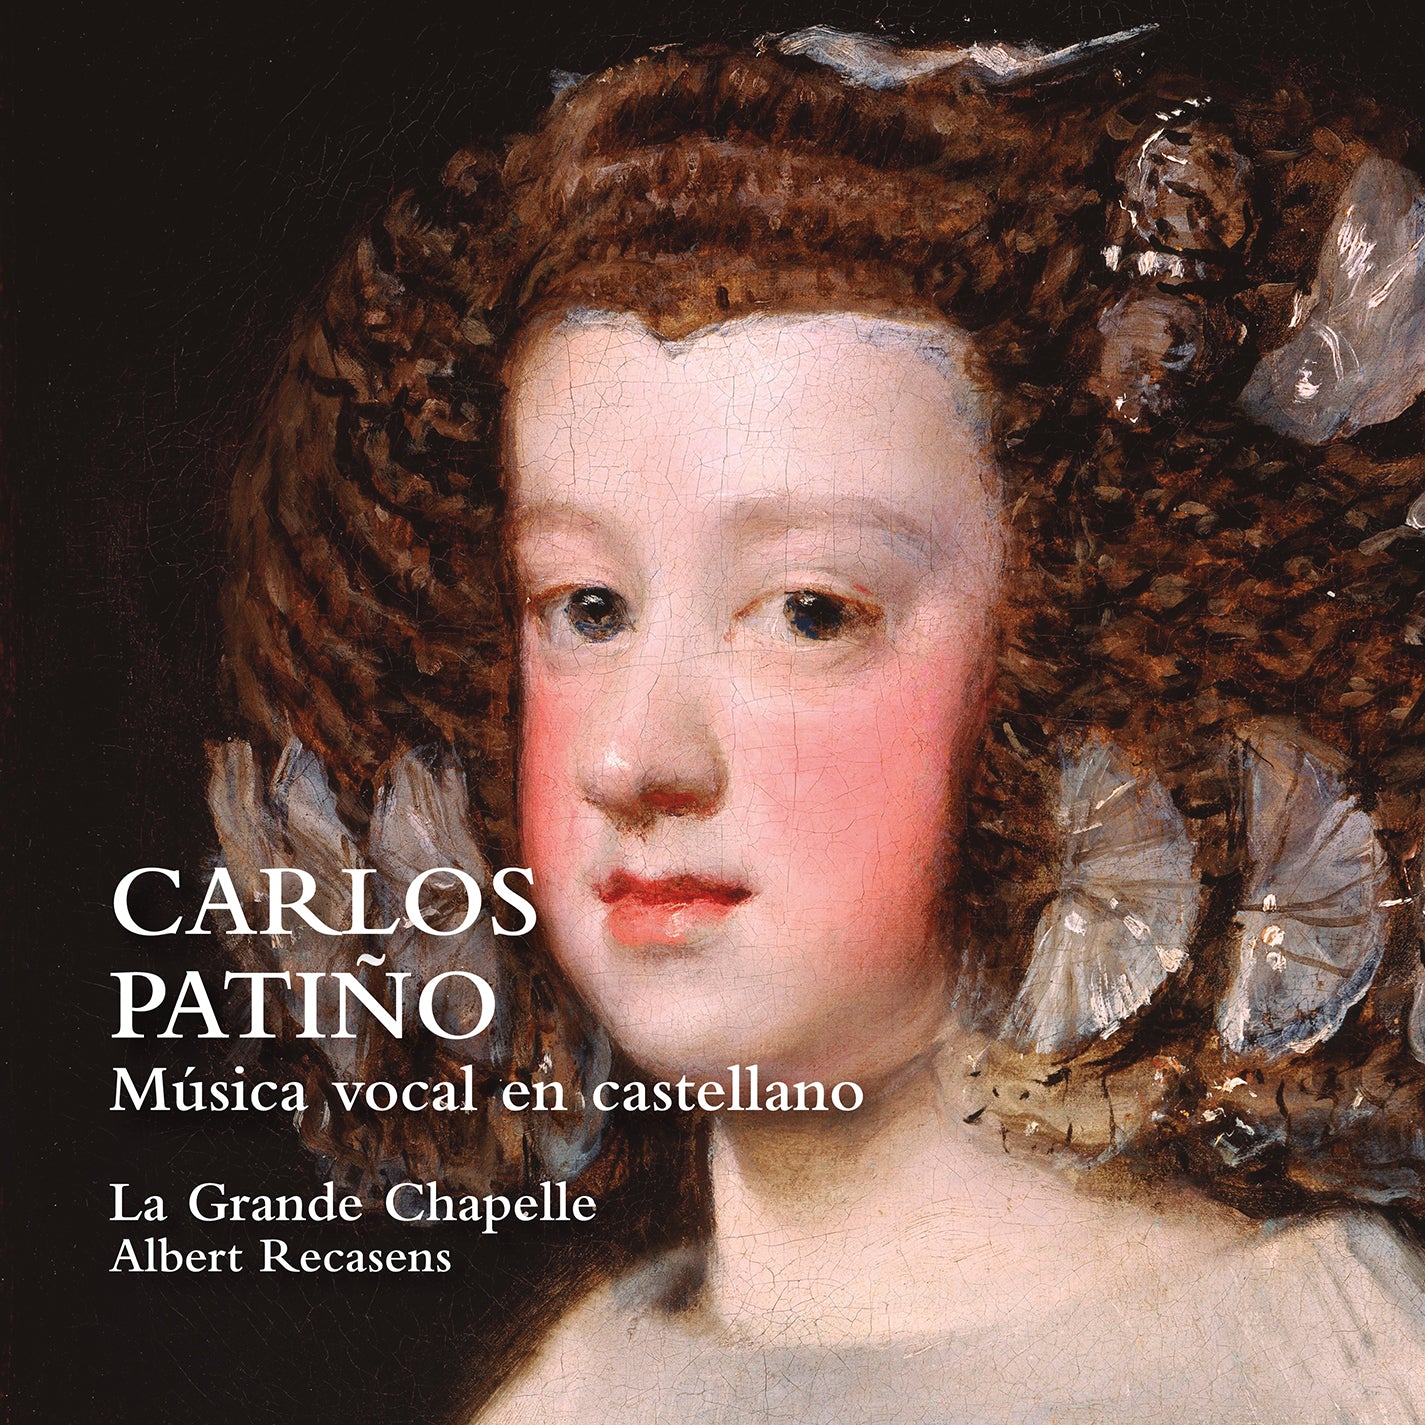 Patino: Vocal Music in Castilian / Recasens, La Grande Chapelle